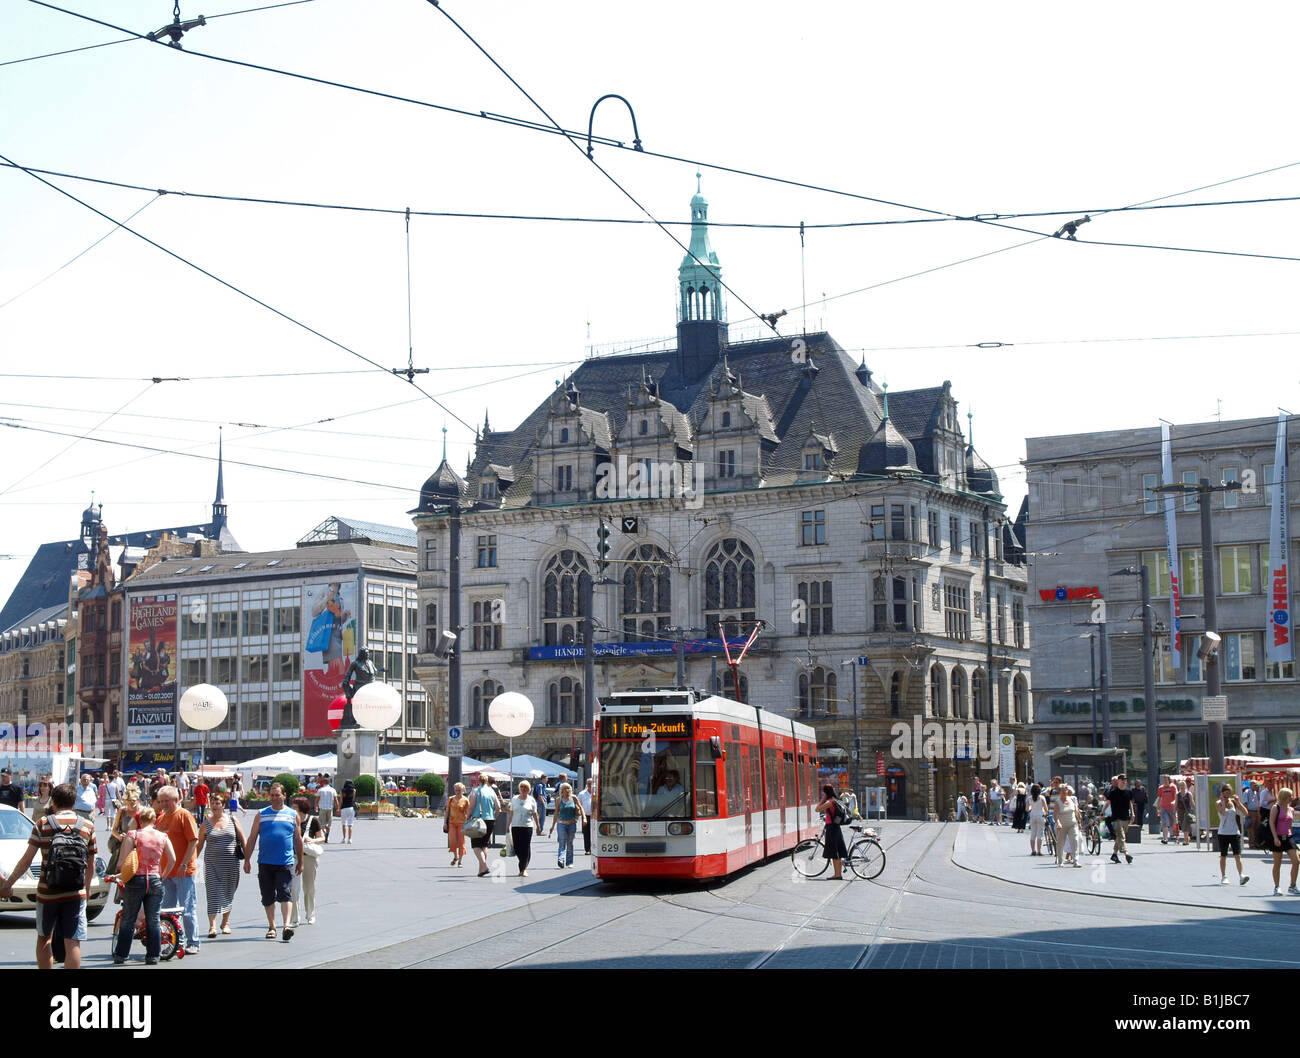 Zentrum der alten Stadt Halle, Platz mit Straßenbahn, Deutschland, Sachsen-Anhalt, Halle an der Saale Stockfoto